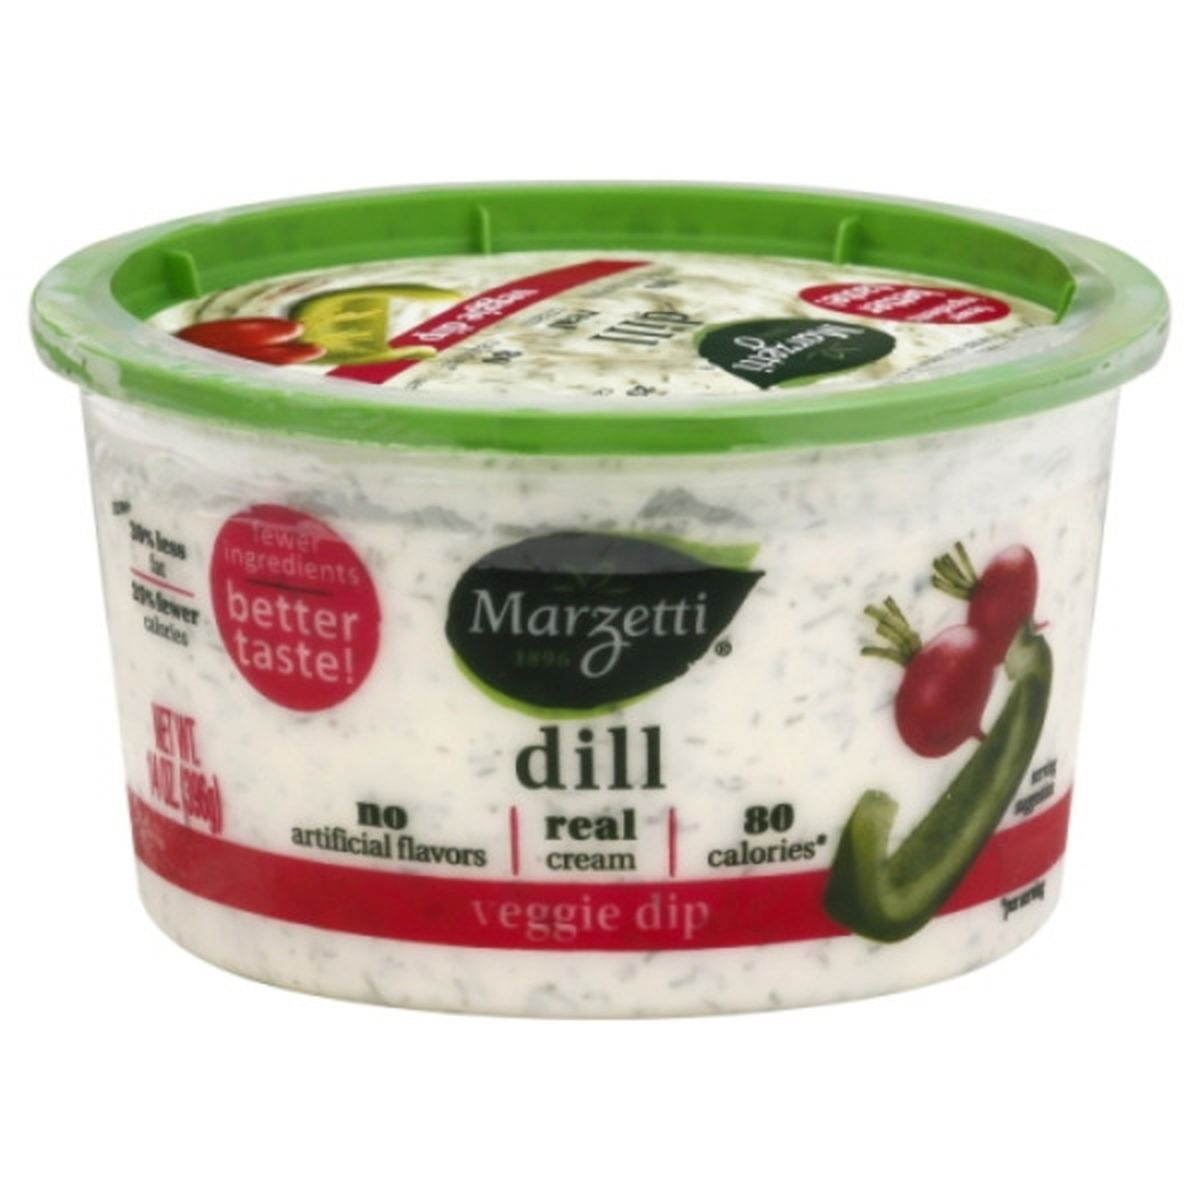 Calories in Marzetti Veggie Dip, Dill